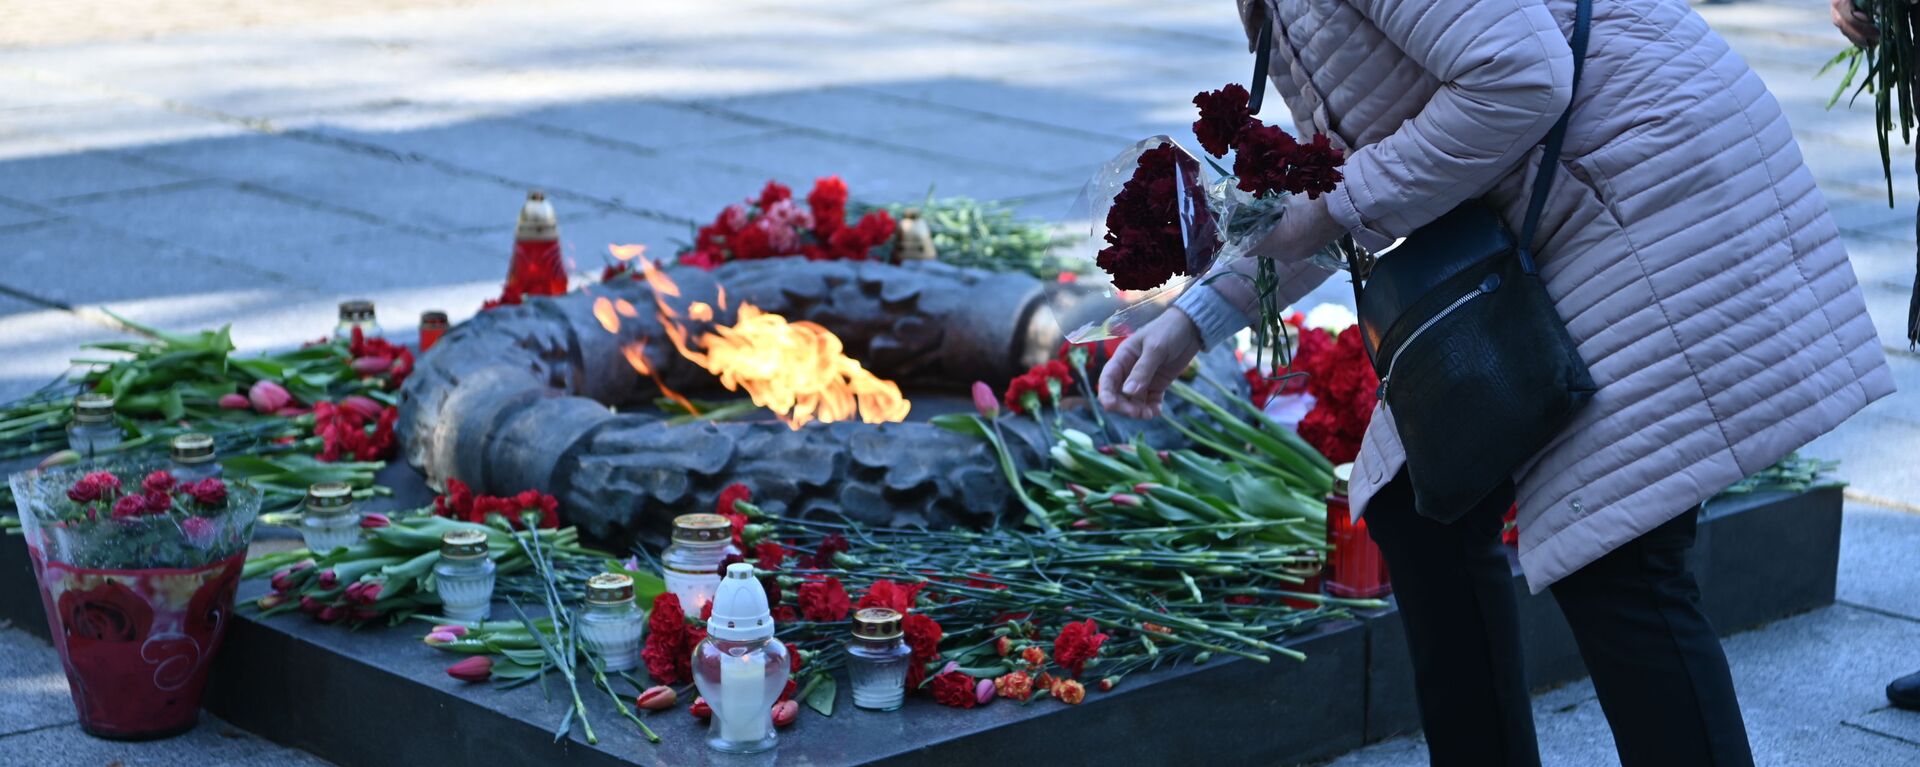 На Анткальнисском кладбище в Вильнюсе почтили память павших в Великой Отечественной войне - Sputnik Литва, 1920, 15.05.2021